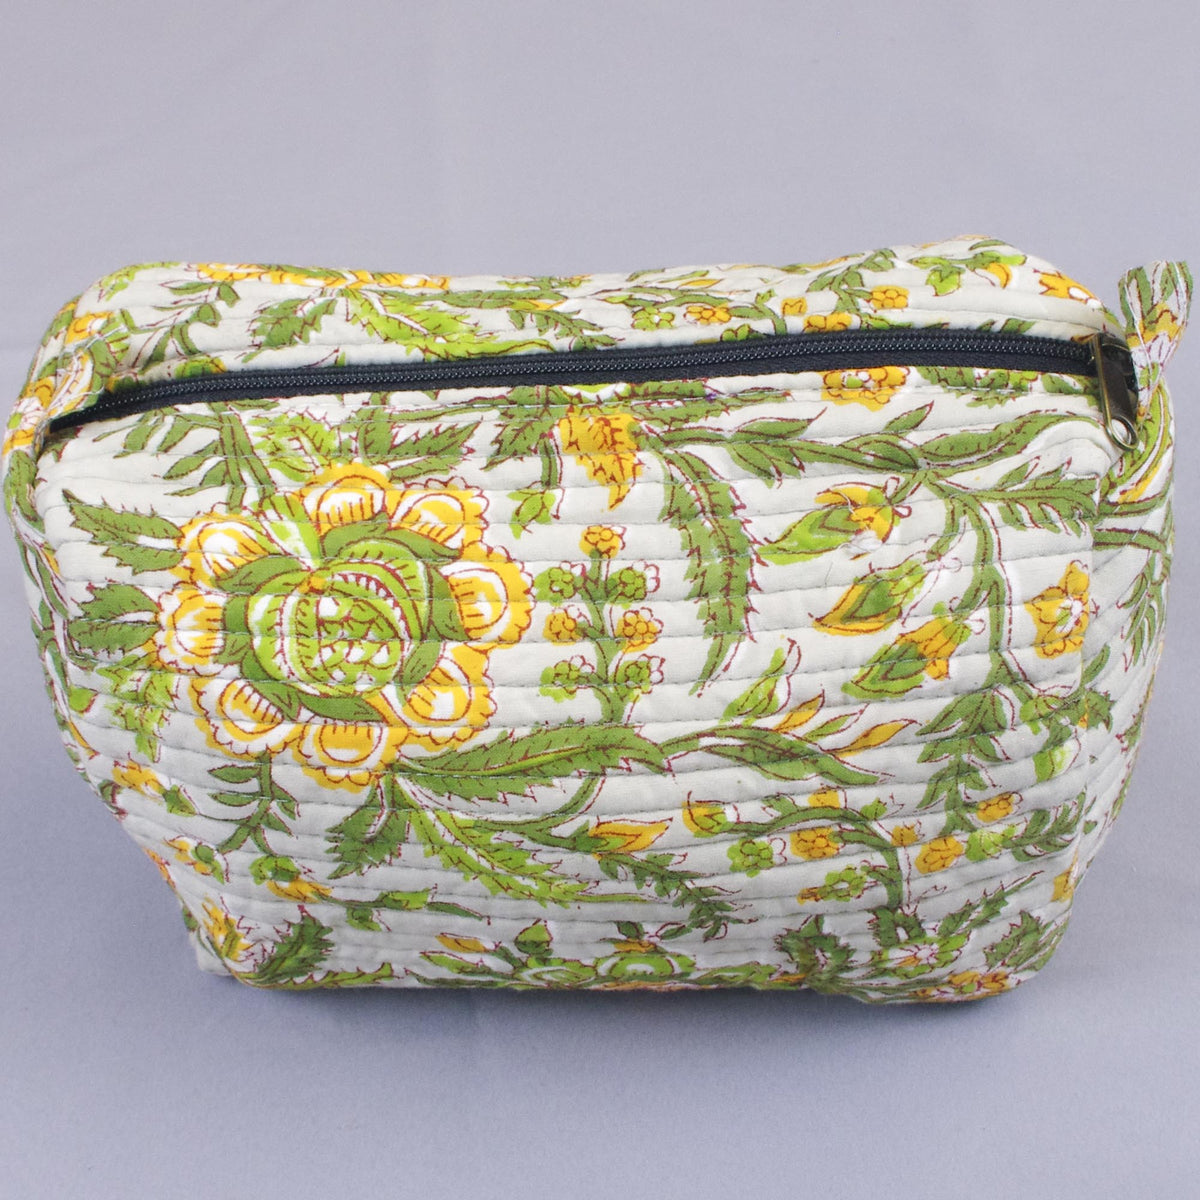 Gesteppte Kulturtasche mit Blockdruck - Grün, Gelb, Blumenmuster